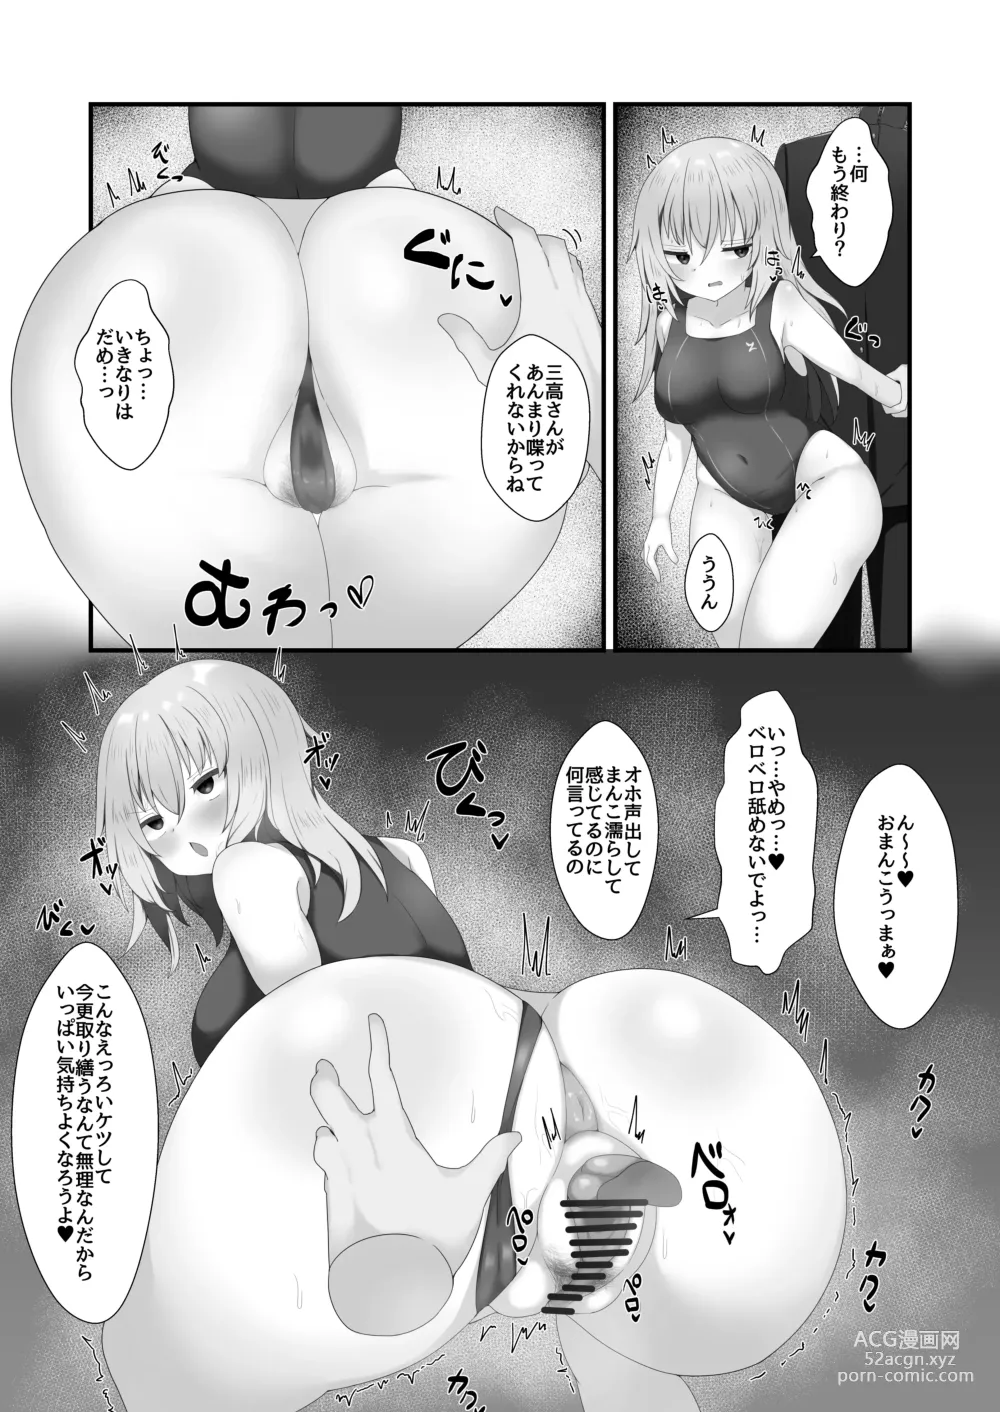 Page 7 of doujinshi Hiniku ni Ochiru.